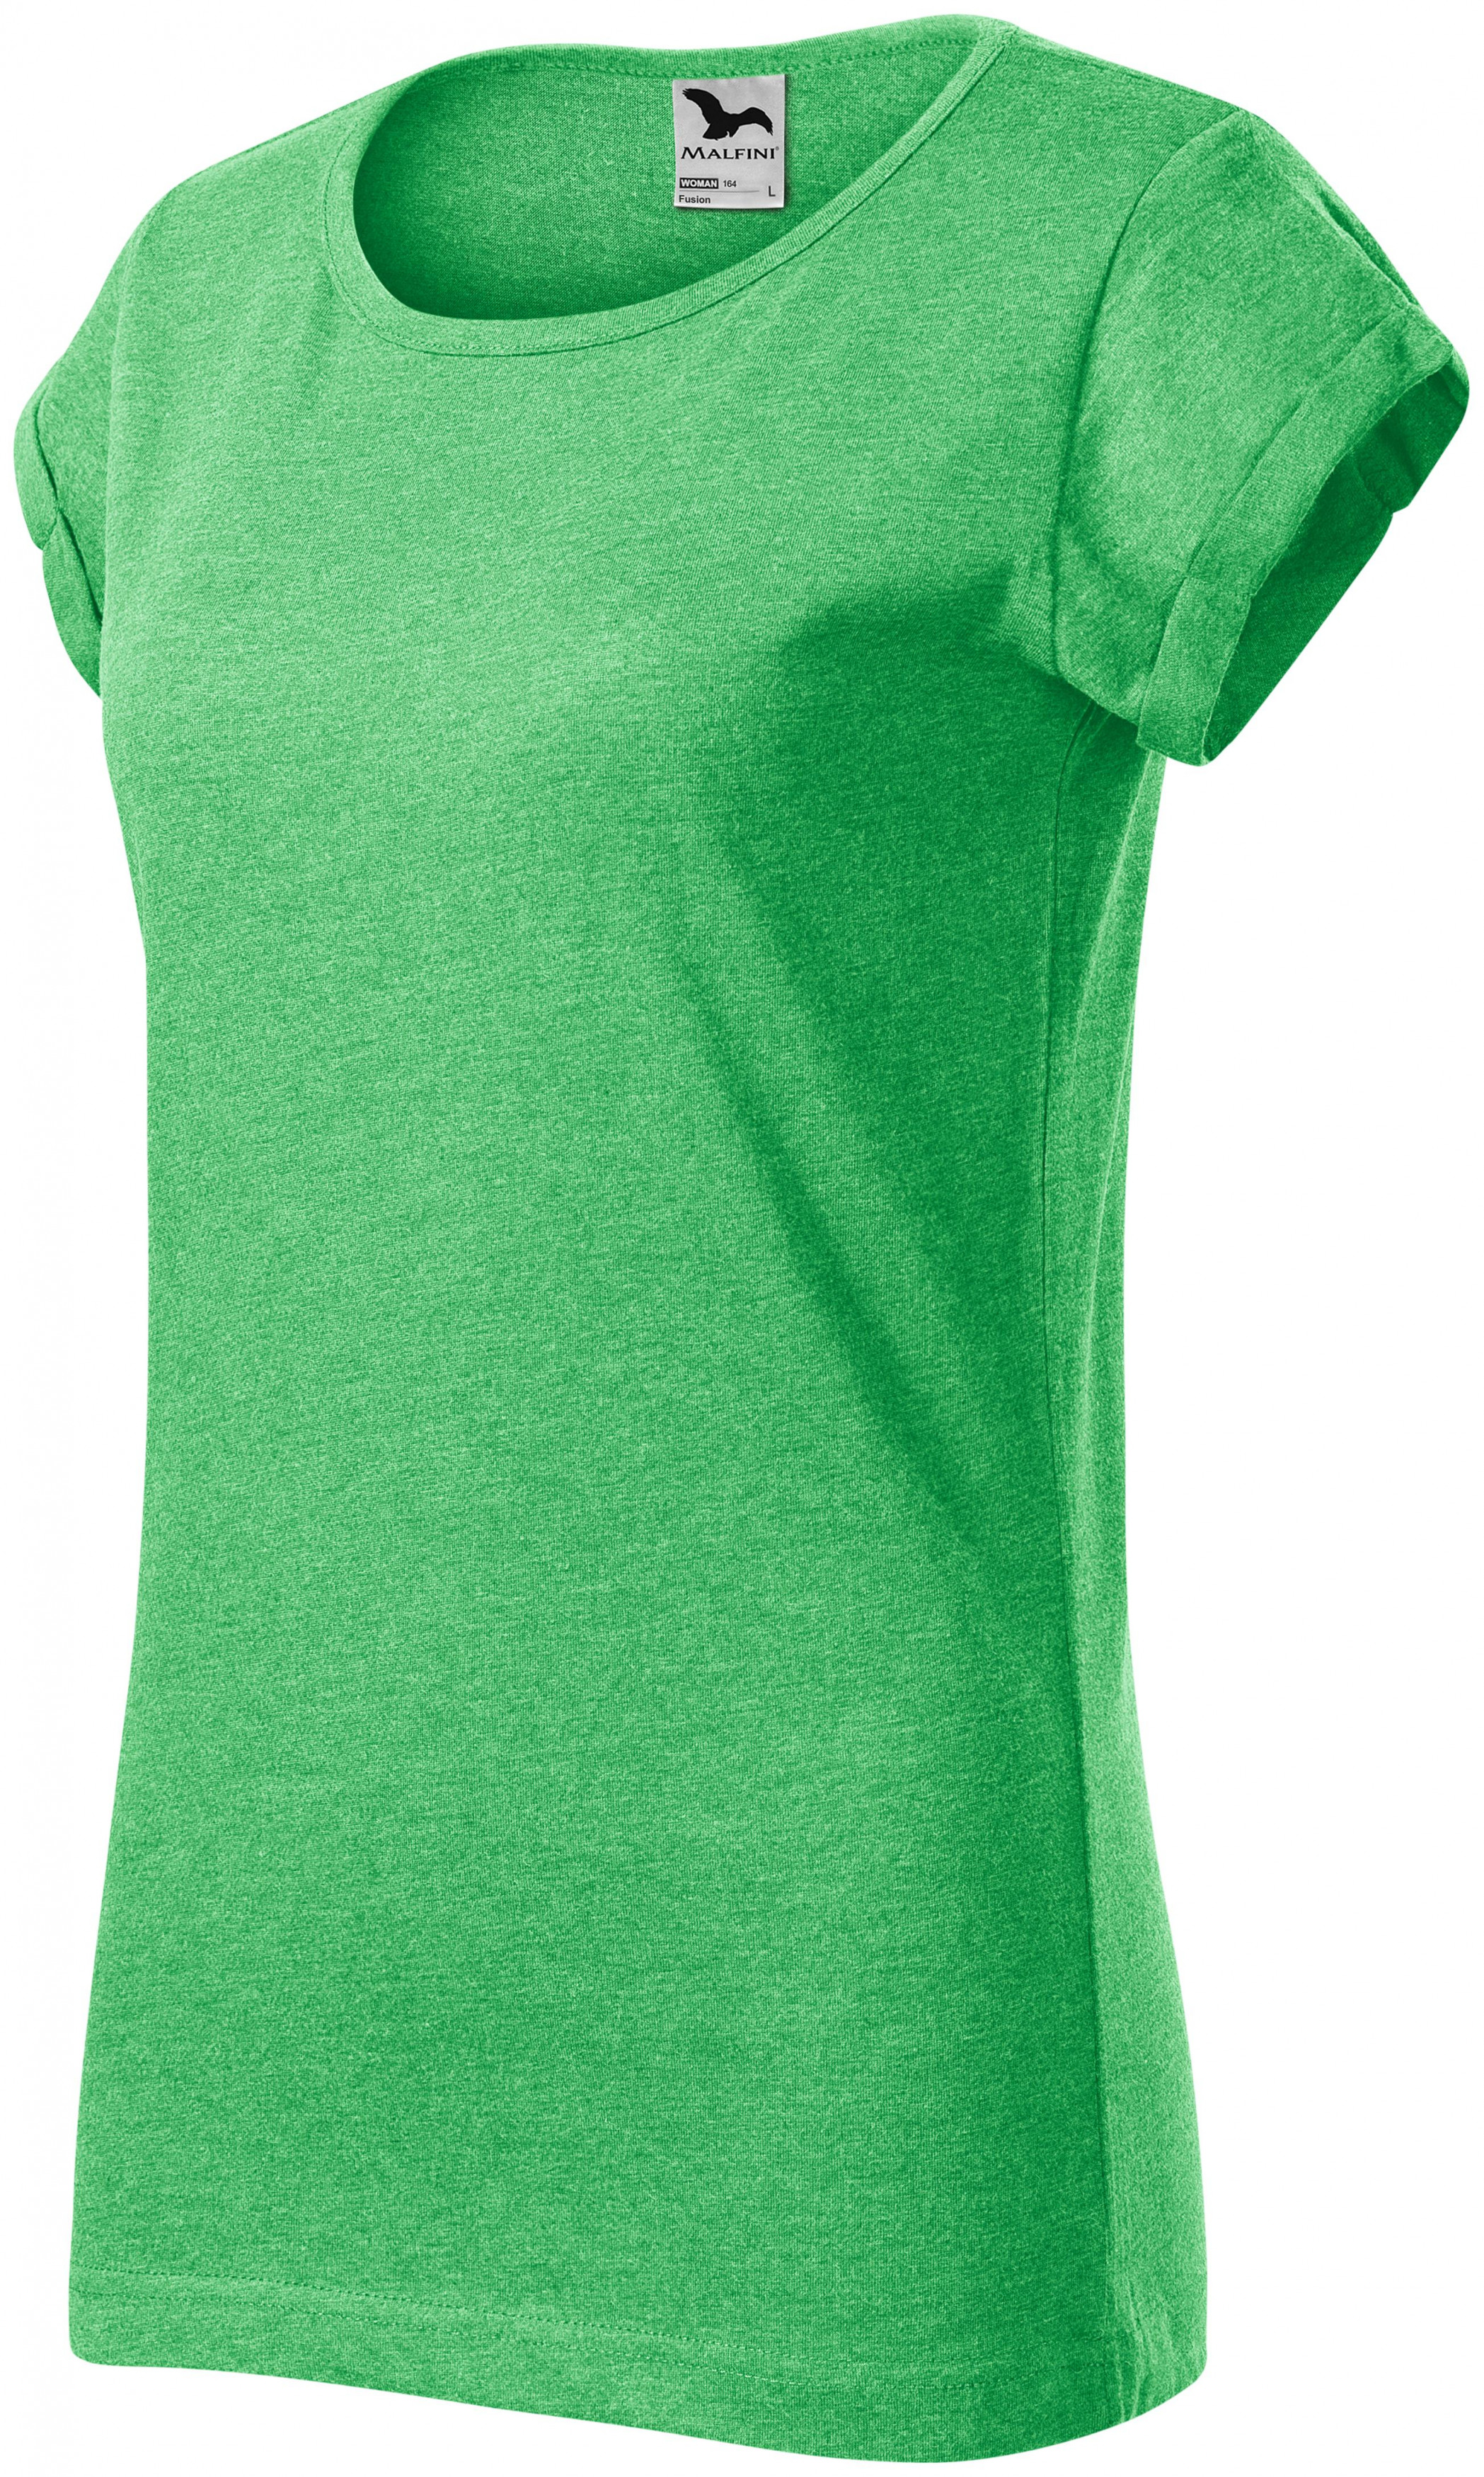 Dámske tričko s vyhrnutými rukávmi, zelený melír, L